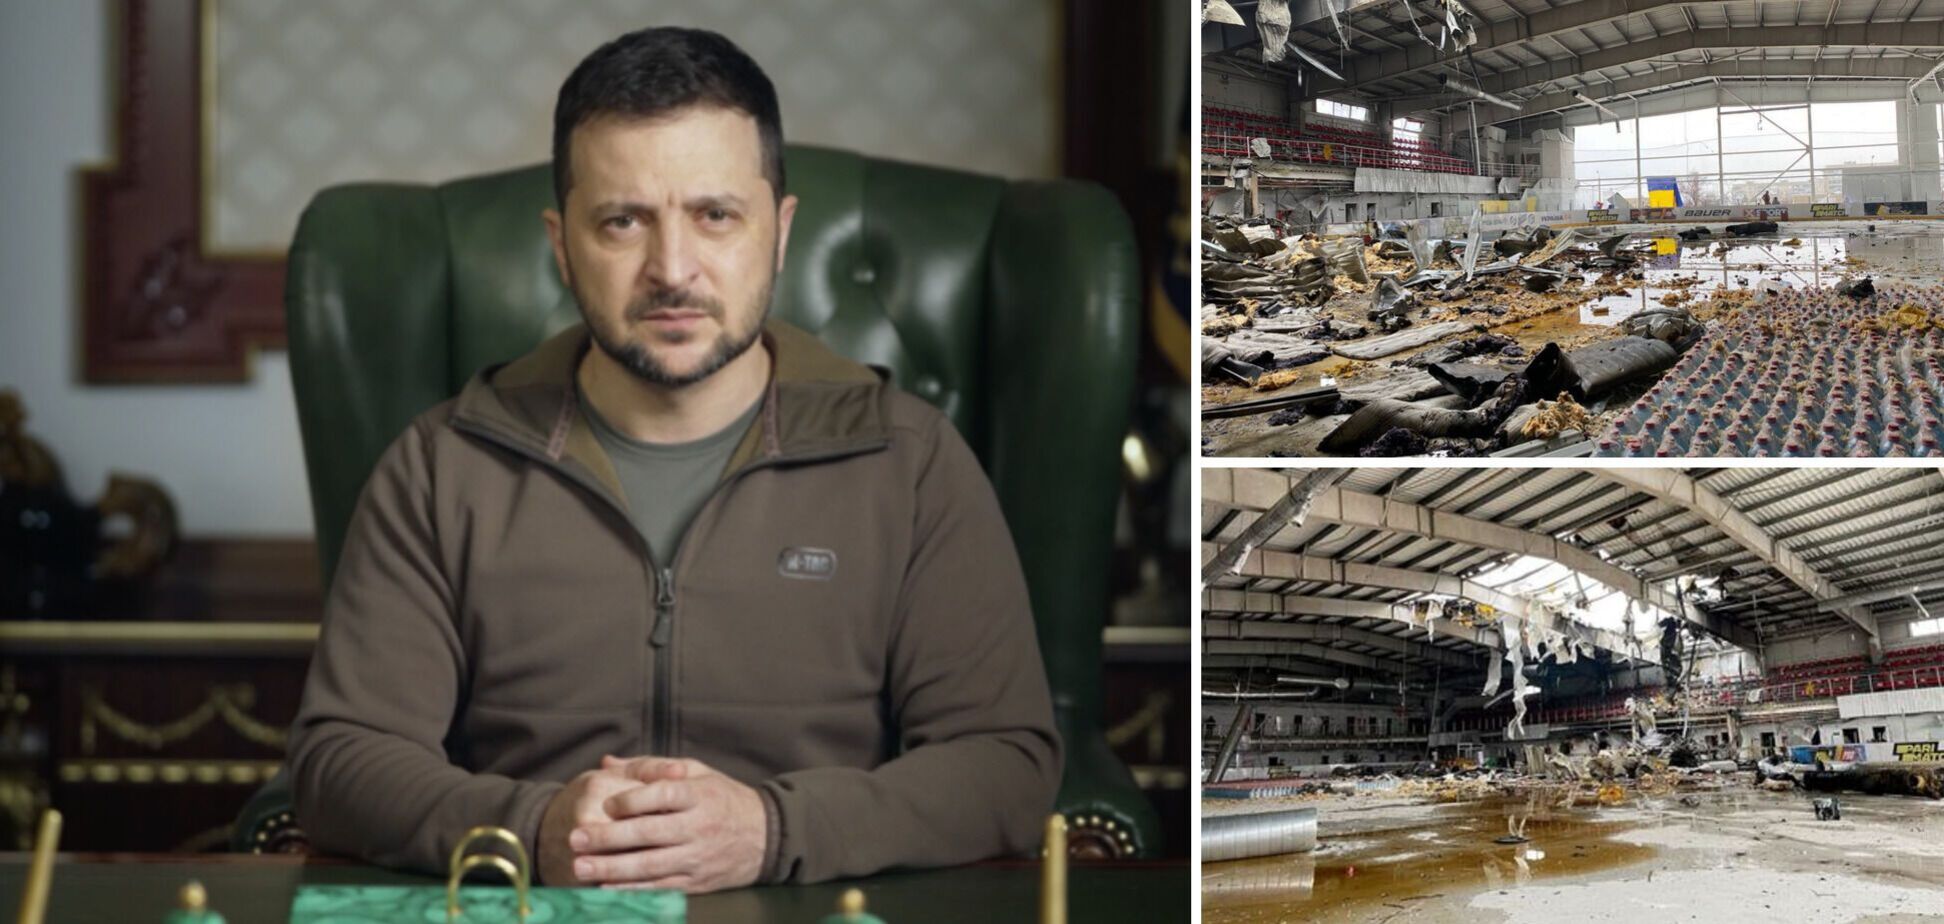 Российские террористы уничтожили ледовую арену в Дружковке, ее использовали как хаб для распределения гуманитарной помощи, – Зеленский